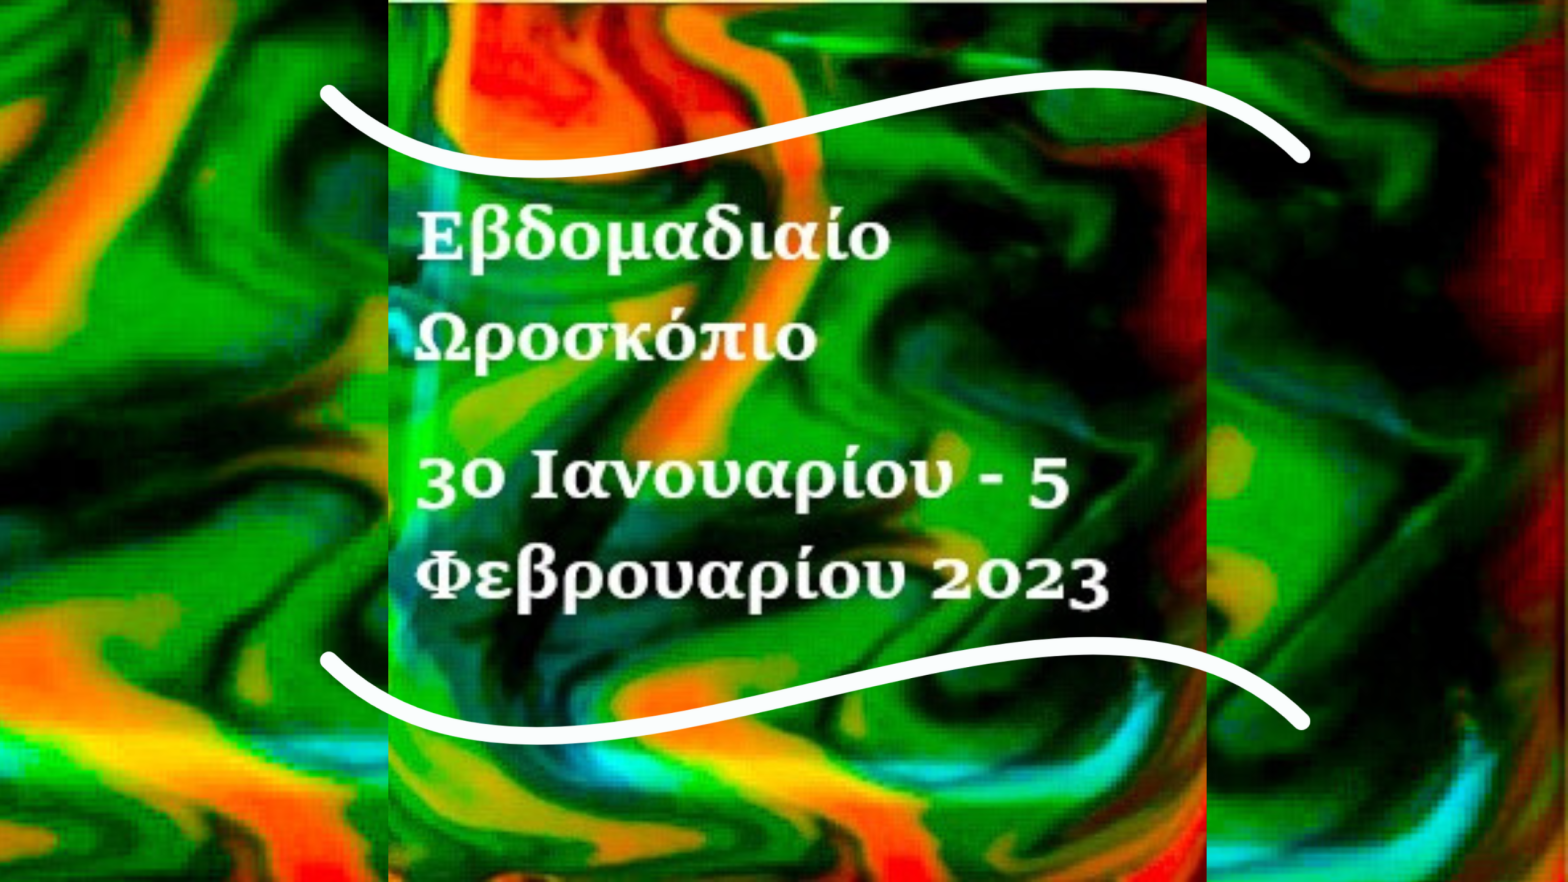 Εβδομαδιαίο Ωροσκόπιο 30 Ιανουαρίου - 5 Φεβρουαρίου 2023 Αθηναις Πετρου , Αστρολογια,Χαρτομαντεια ,επανασυνδεση,πνευματισμος